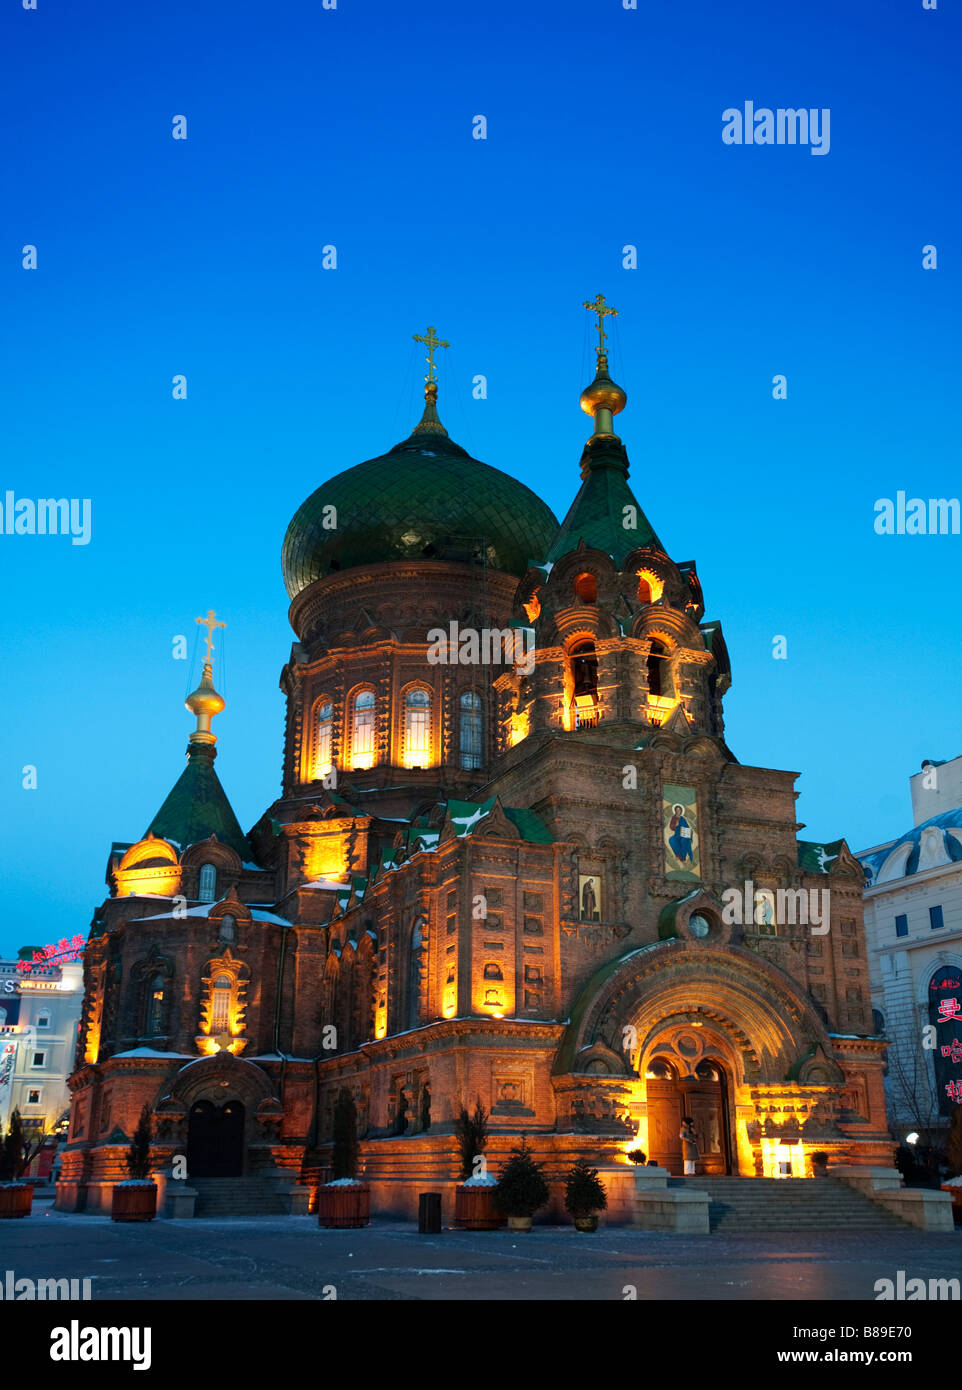 Vue de nuit de St Sophia Église orthodoxe russe dans la région de Harbin Chine 2009 Banque D'Images